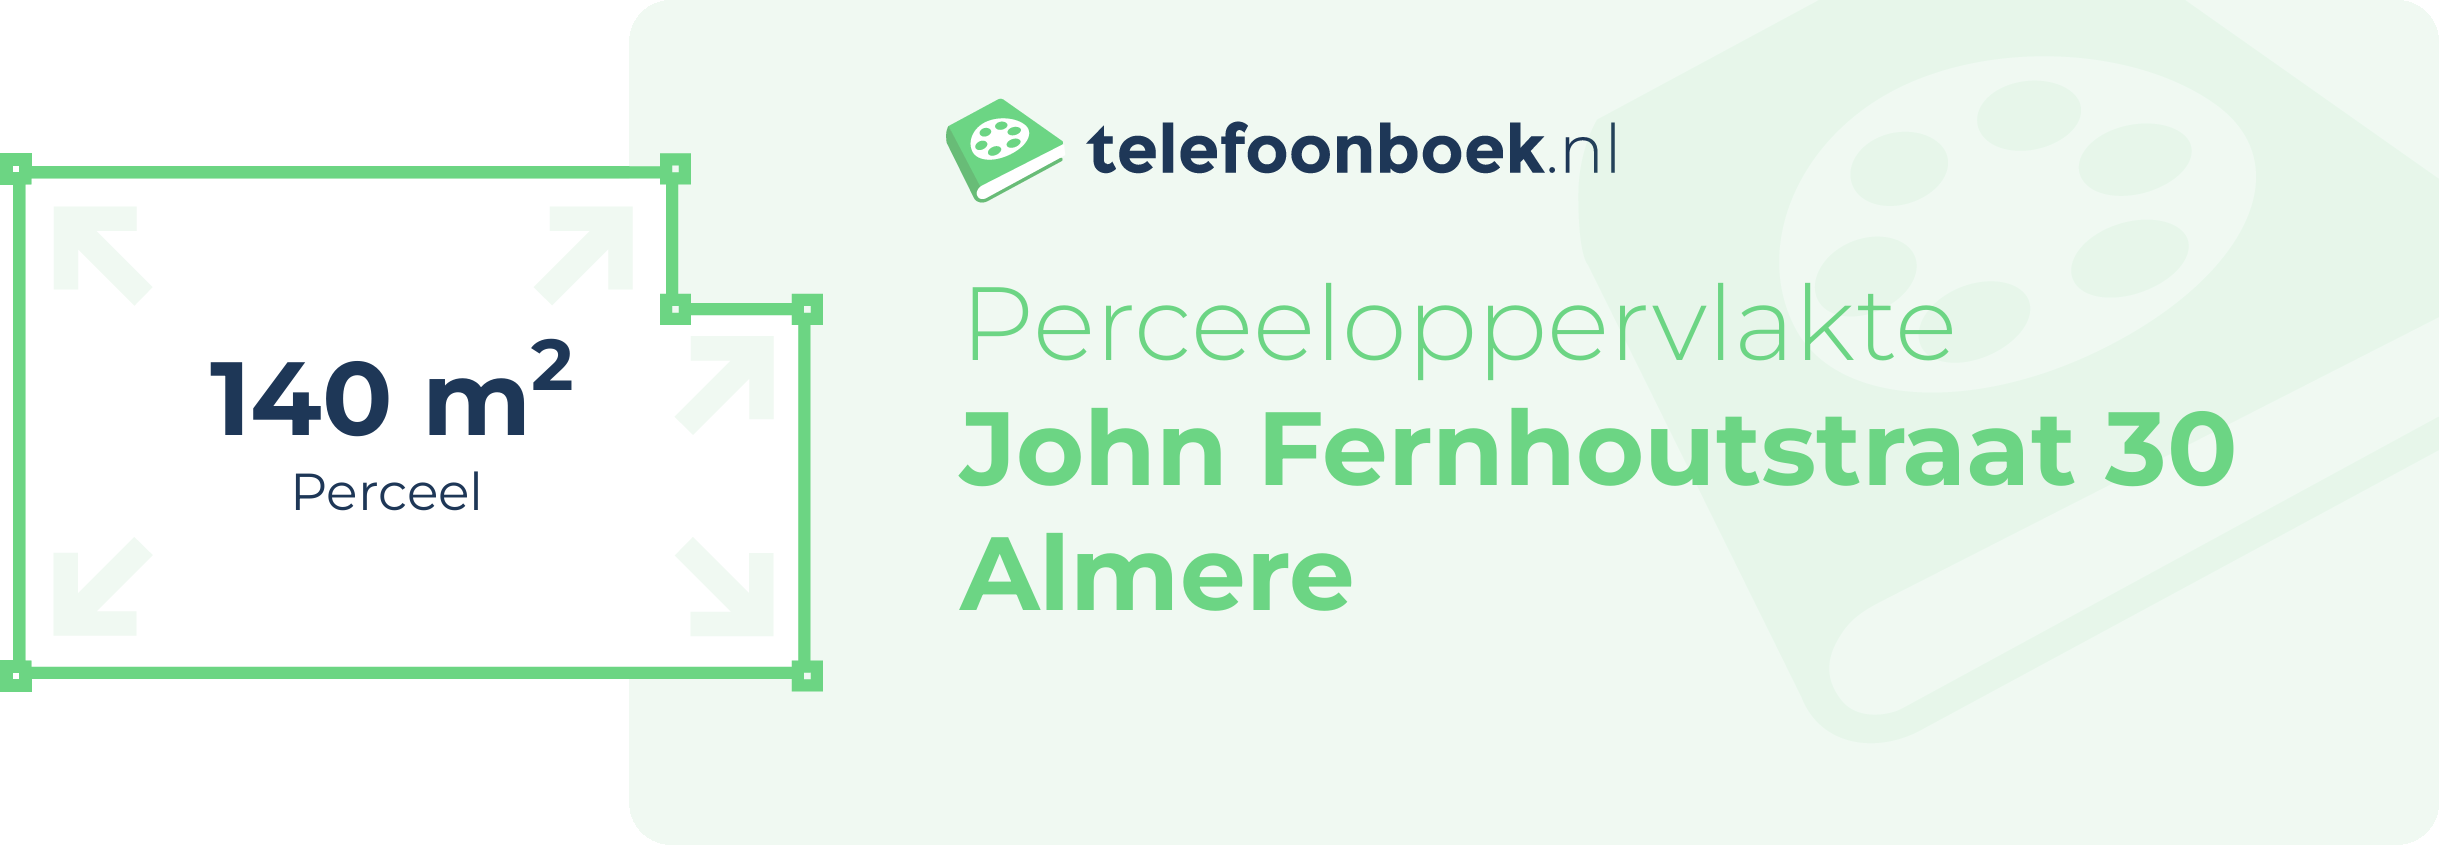 Perceeloppervlakte John Fernhoutstraat 30 Almere